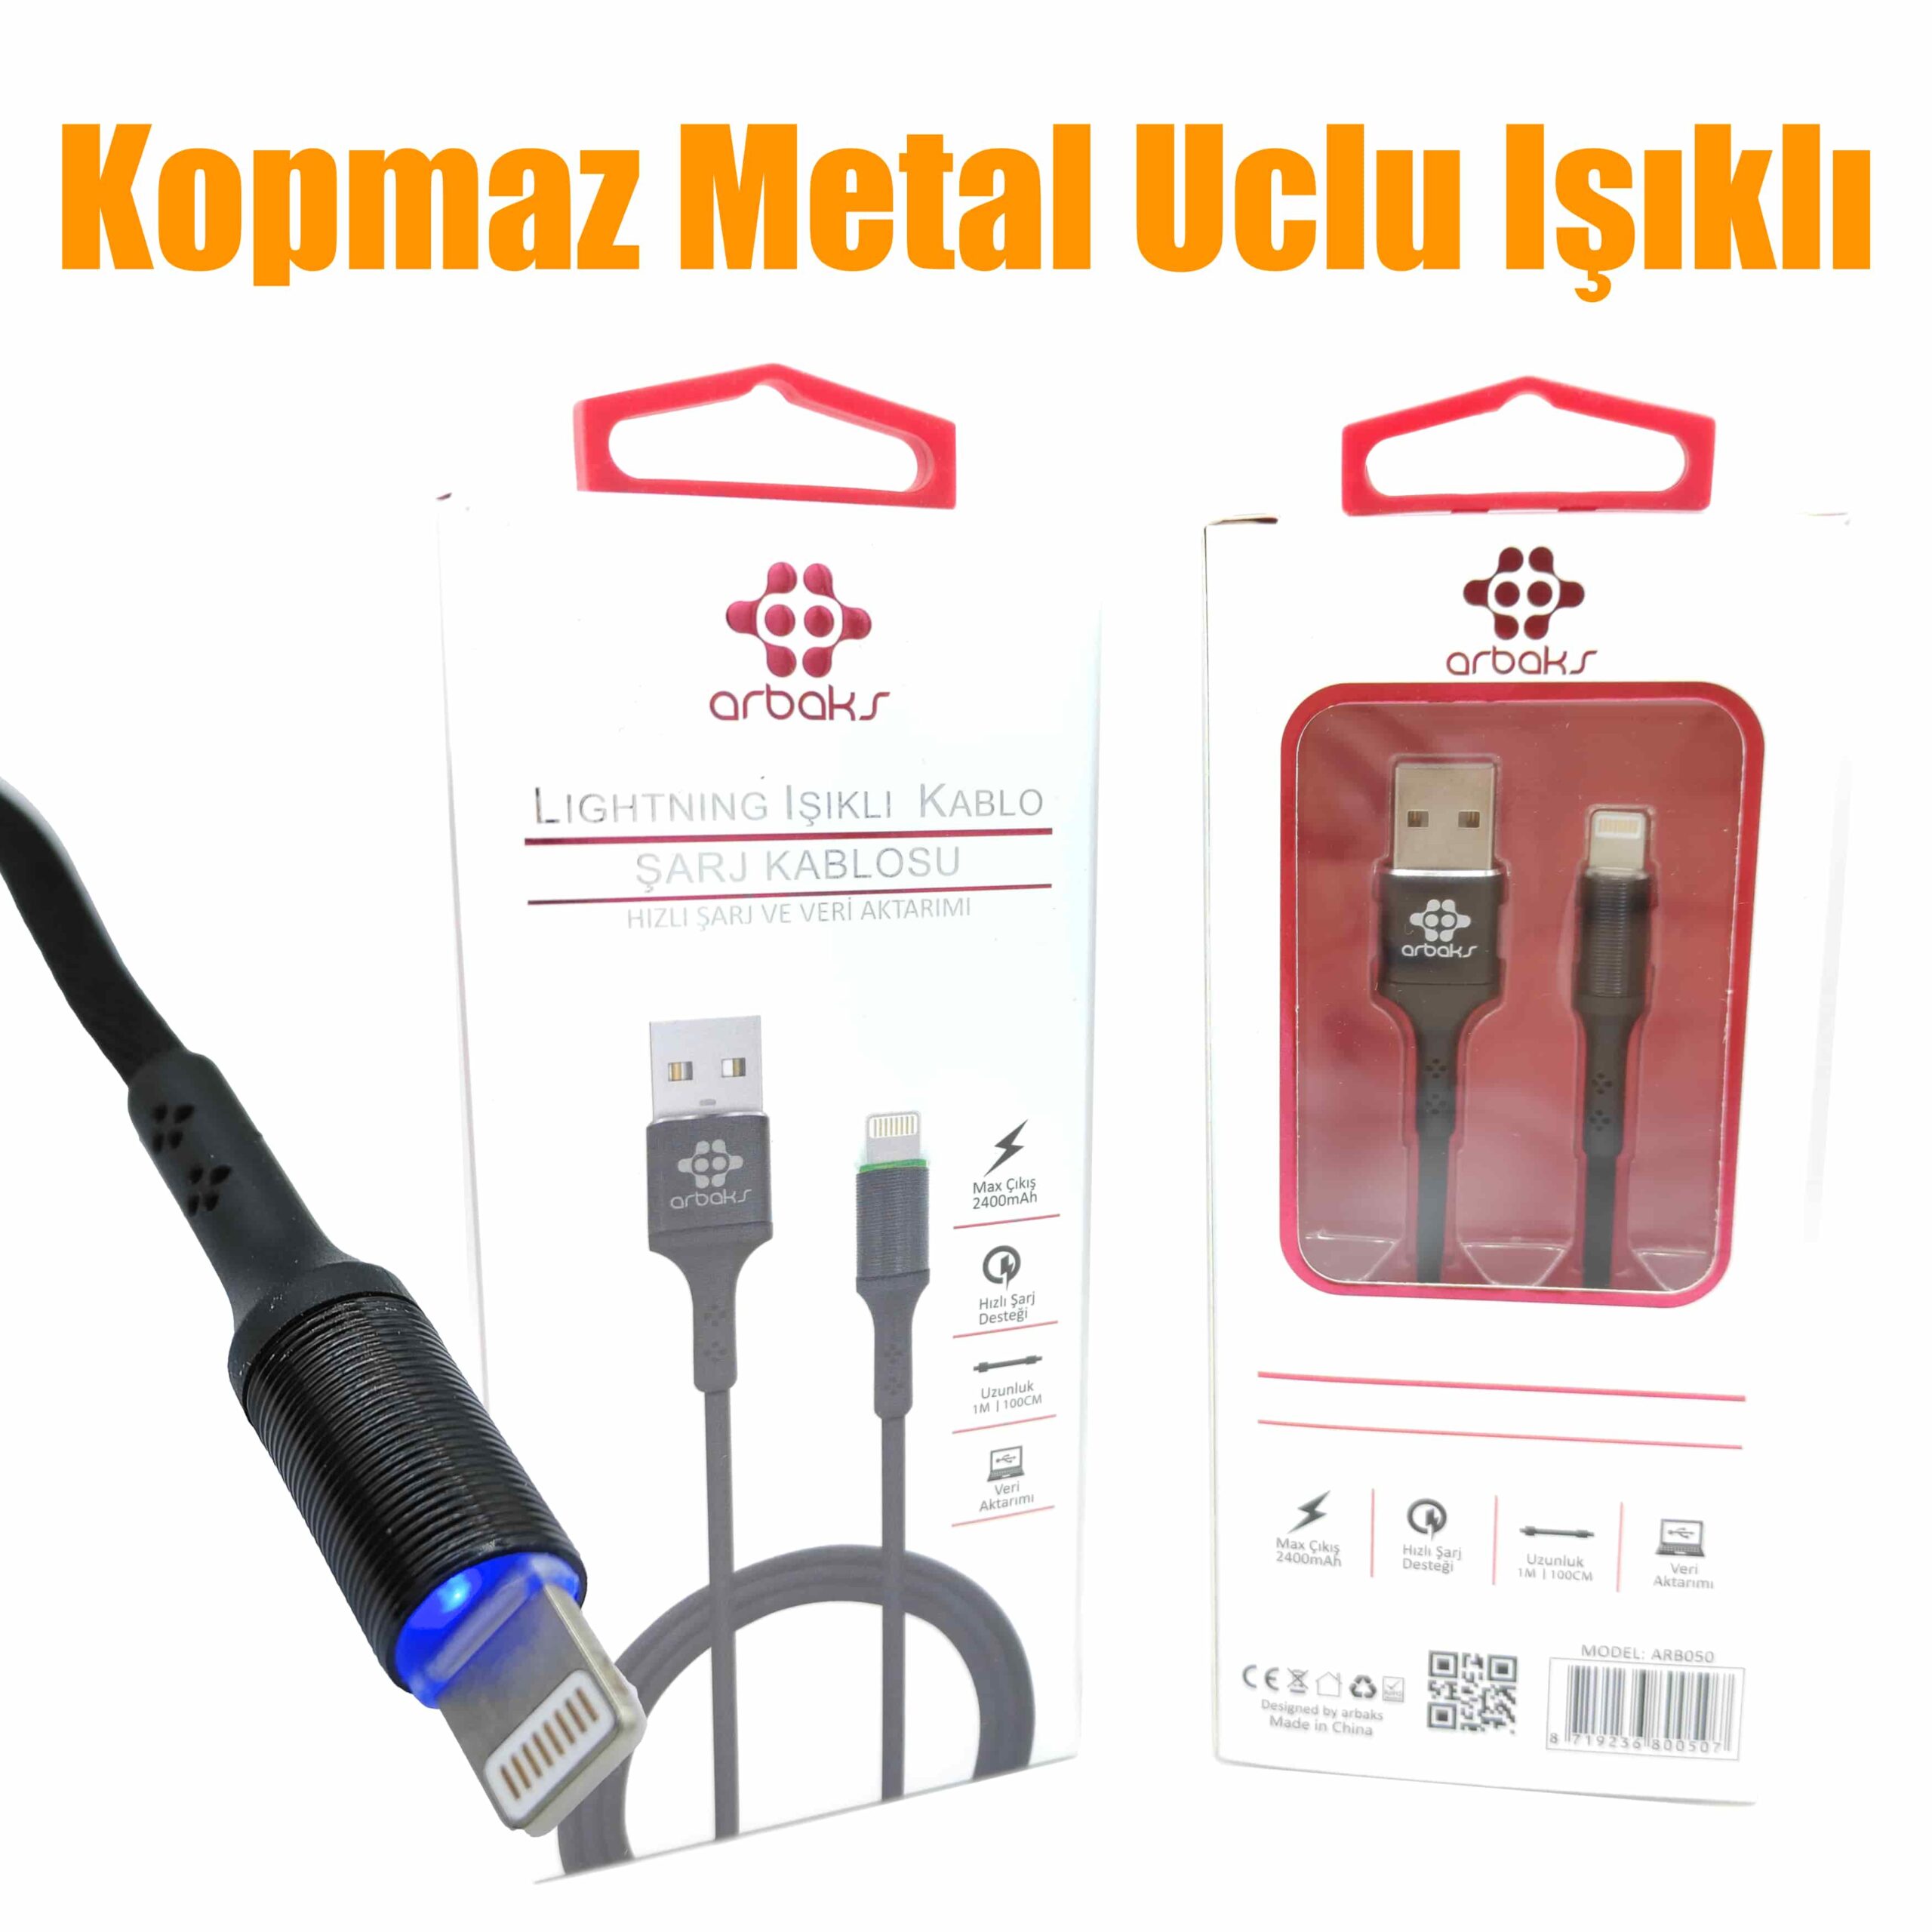 (Iphone) Kopmaz Metal Uclu Işıklı Hızlı Şarj Kablosu Arbaks Arb050